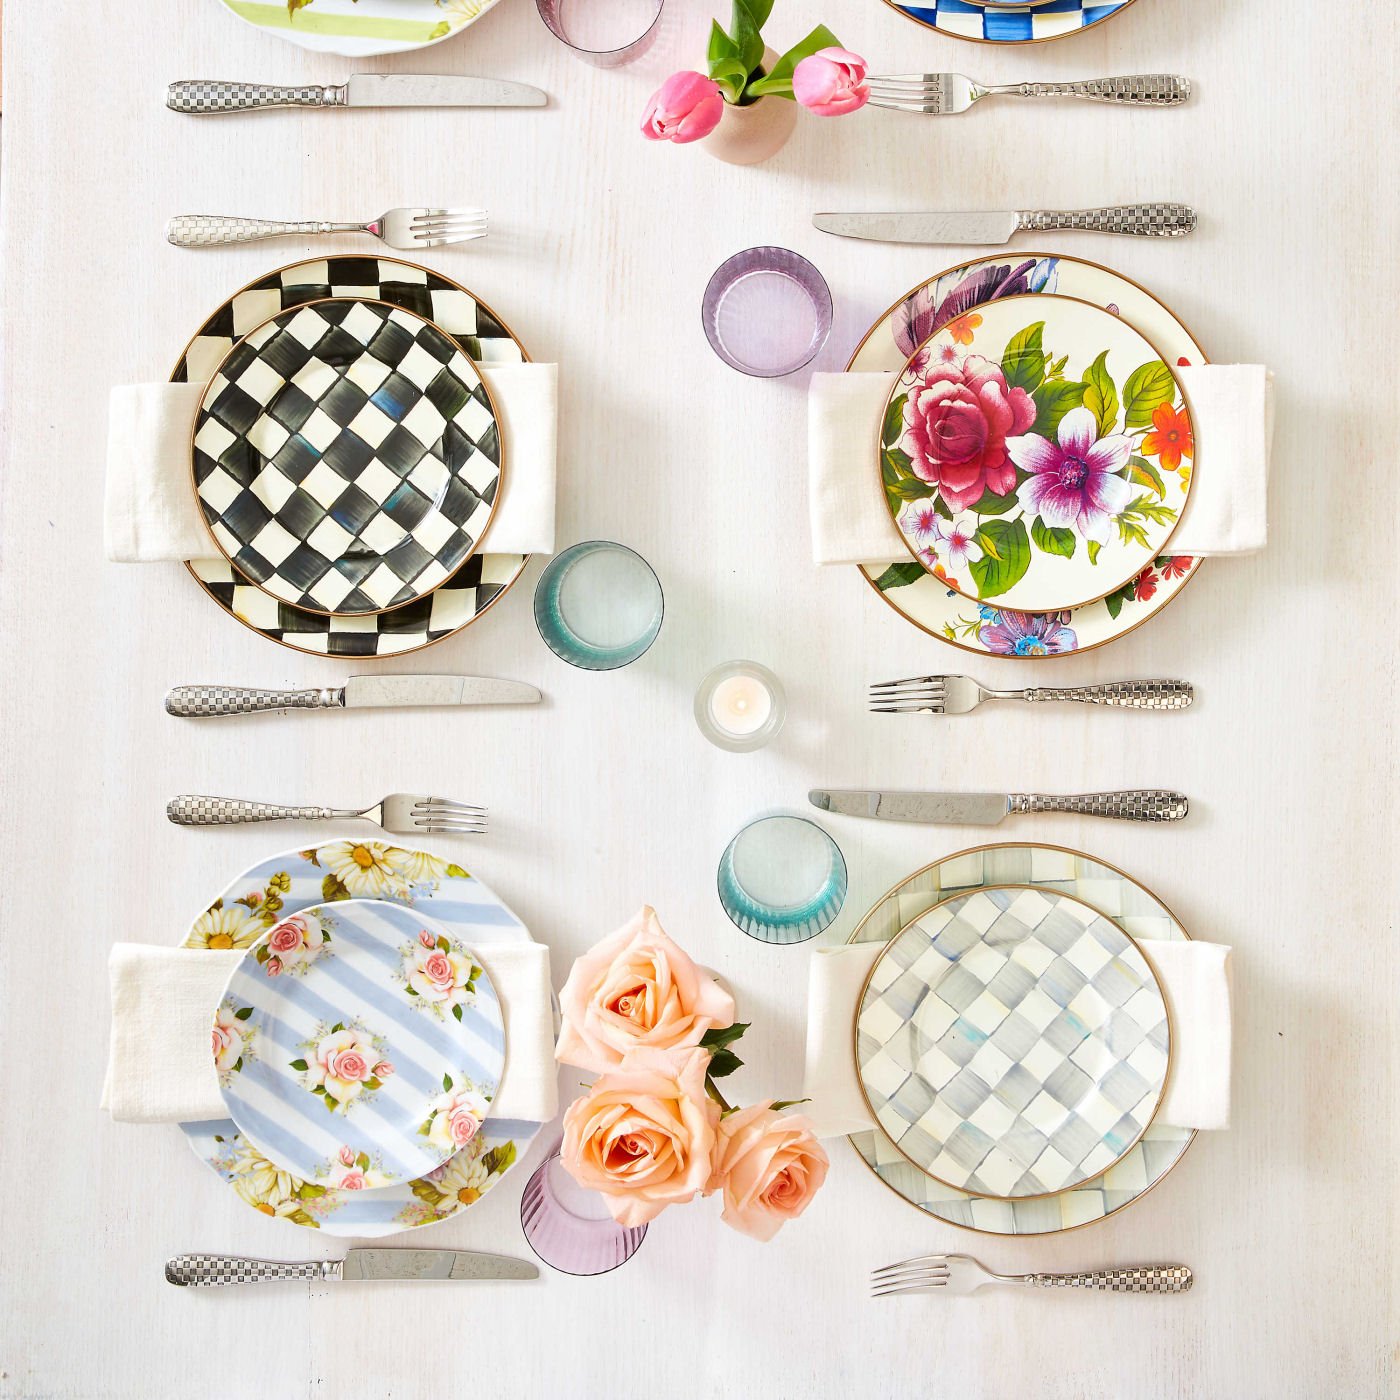 White Flower Market Dinner Plate by Mackenzie-Childs - |VESIMI Design|